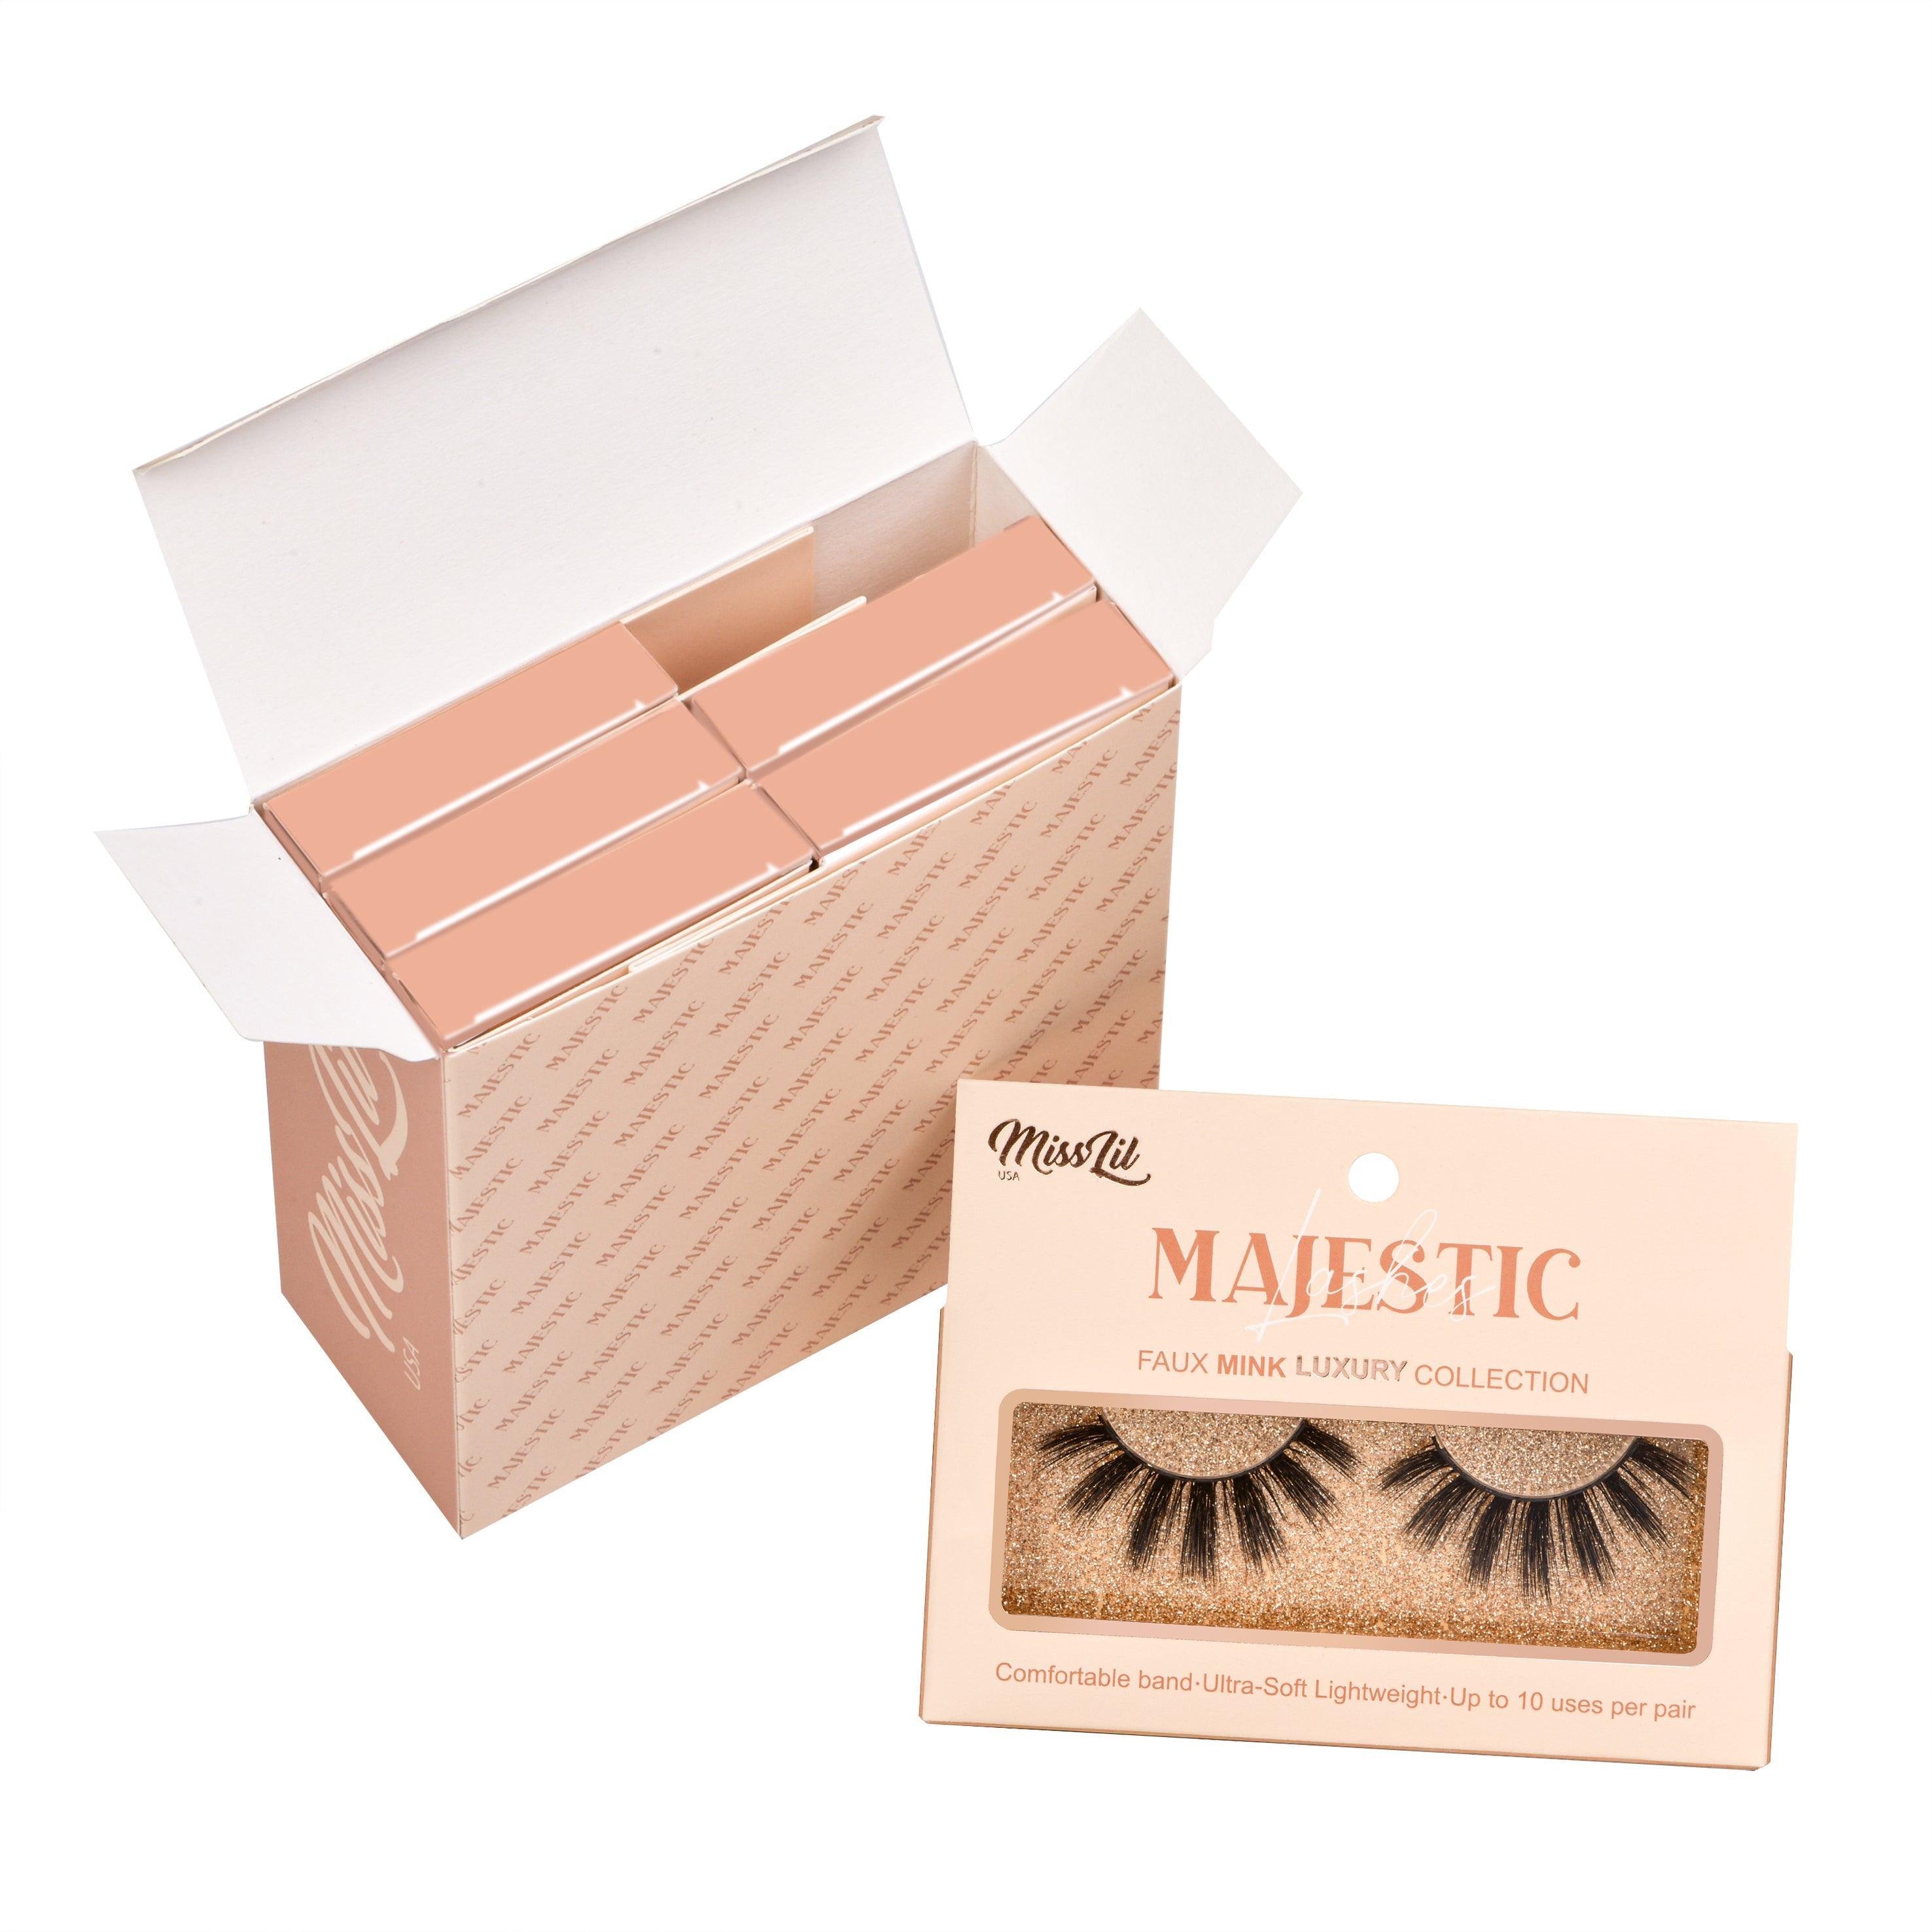 Majestic Collection 17 false eyelashes - Miss Lil USA Wholesale